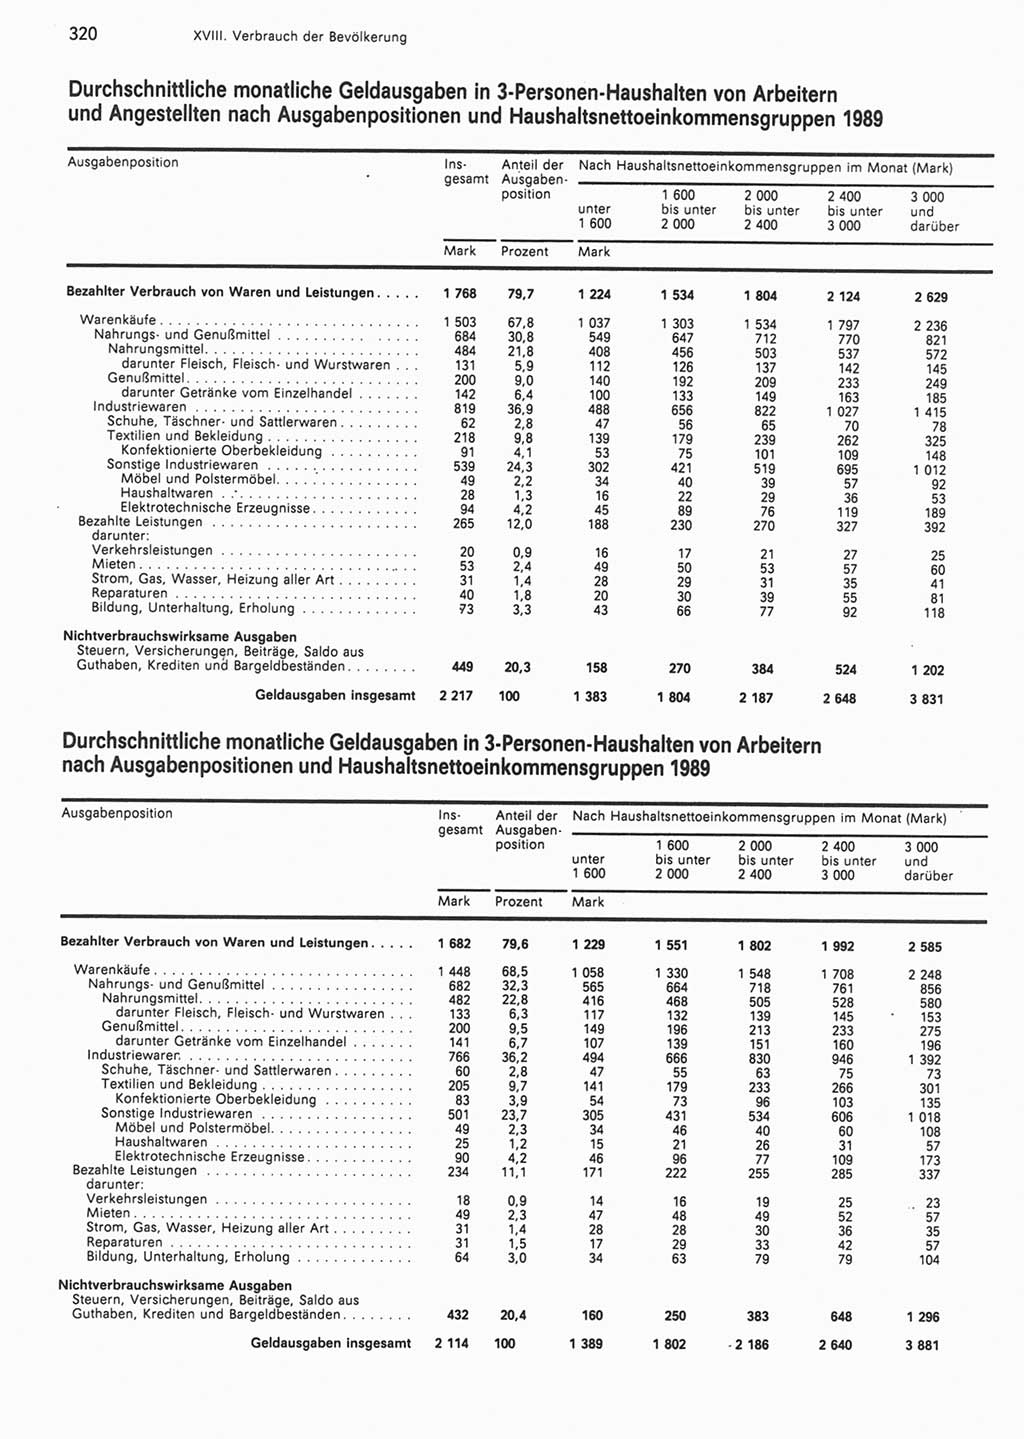 Statistisches Jahrbuch der Deutschen Demokratischen Republik (DDR) 1990, Seite 320 (Stat. Jb. DDR 1990, S. 320)